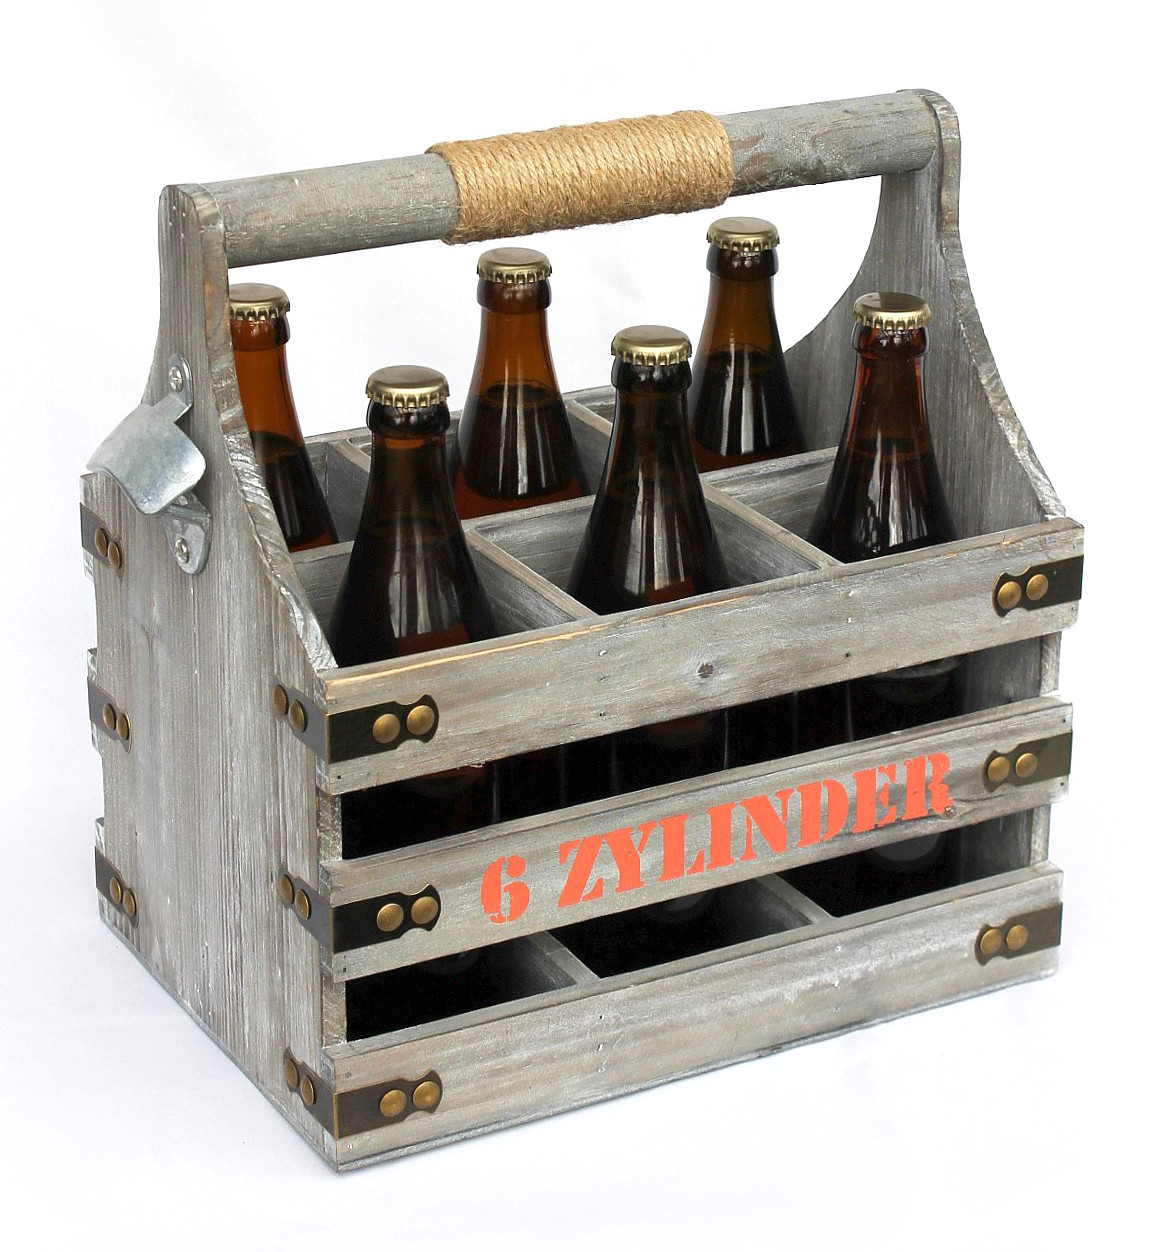 Flaschenträger Bierträger Flaschenkorb Holz-Kiste mit Flaschenöffner        3168 